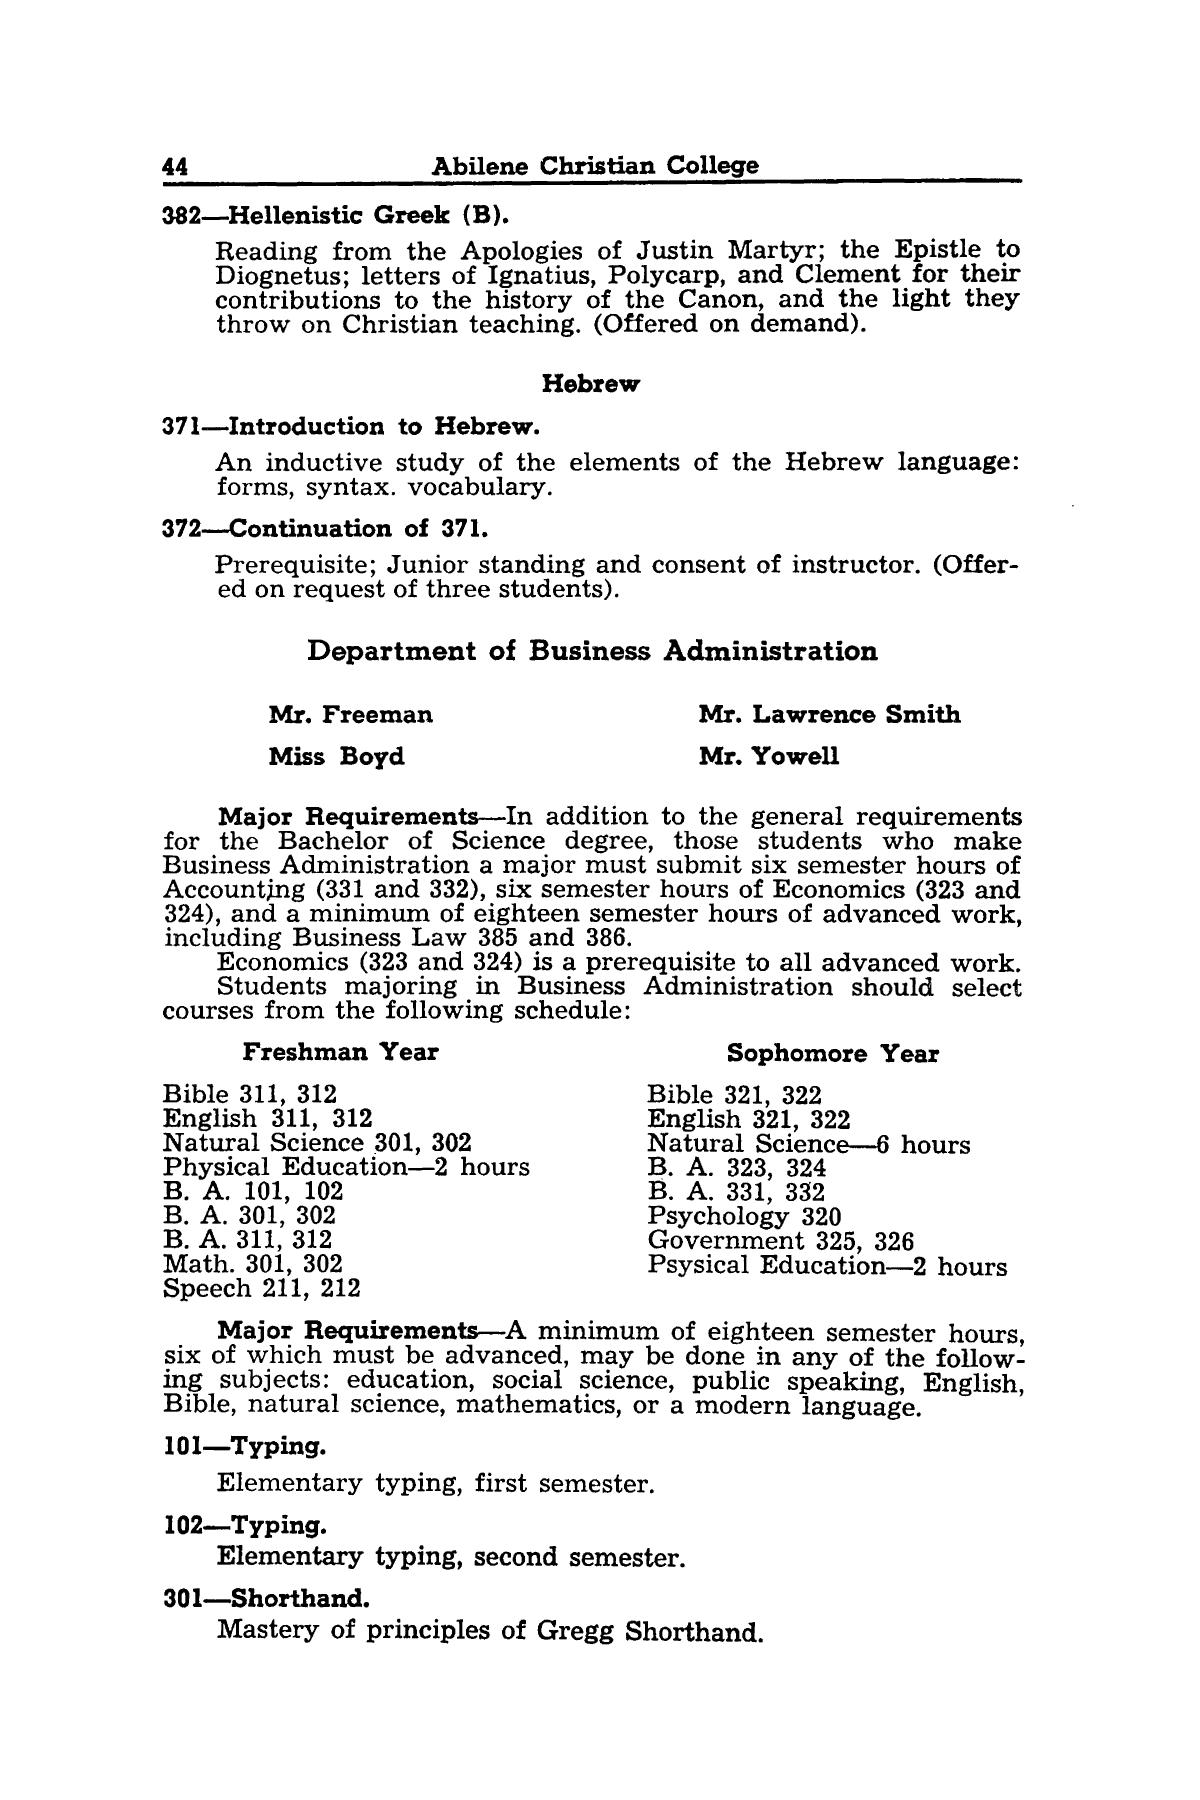 Catalog of Abilene Christian College, 1942-1943
                                                
                                                    44
                                                